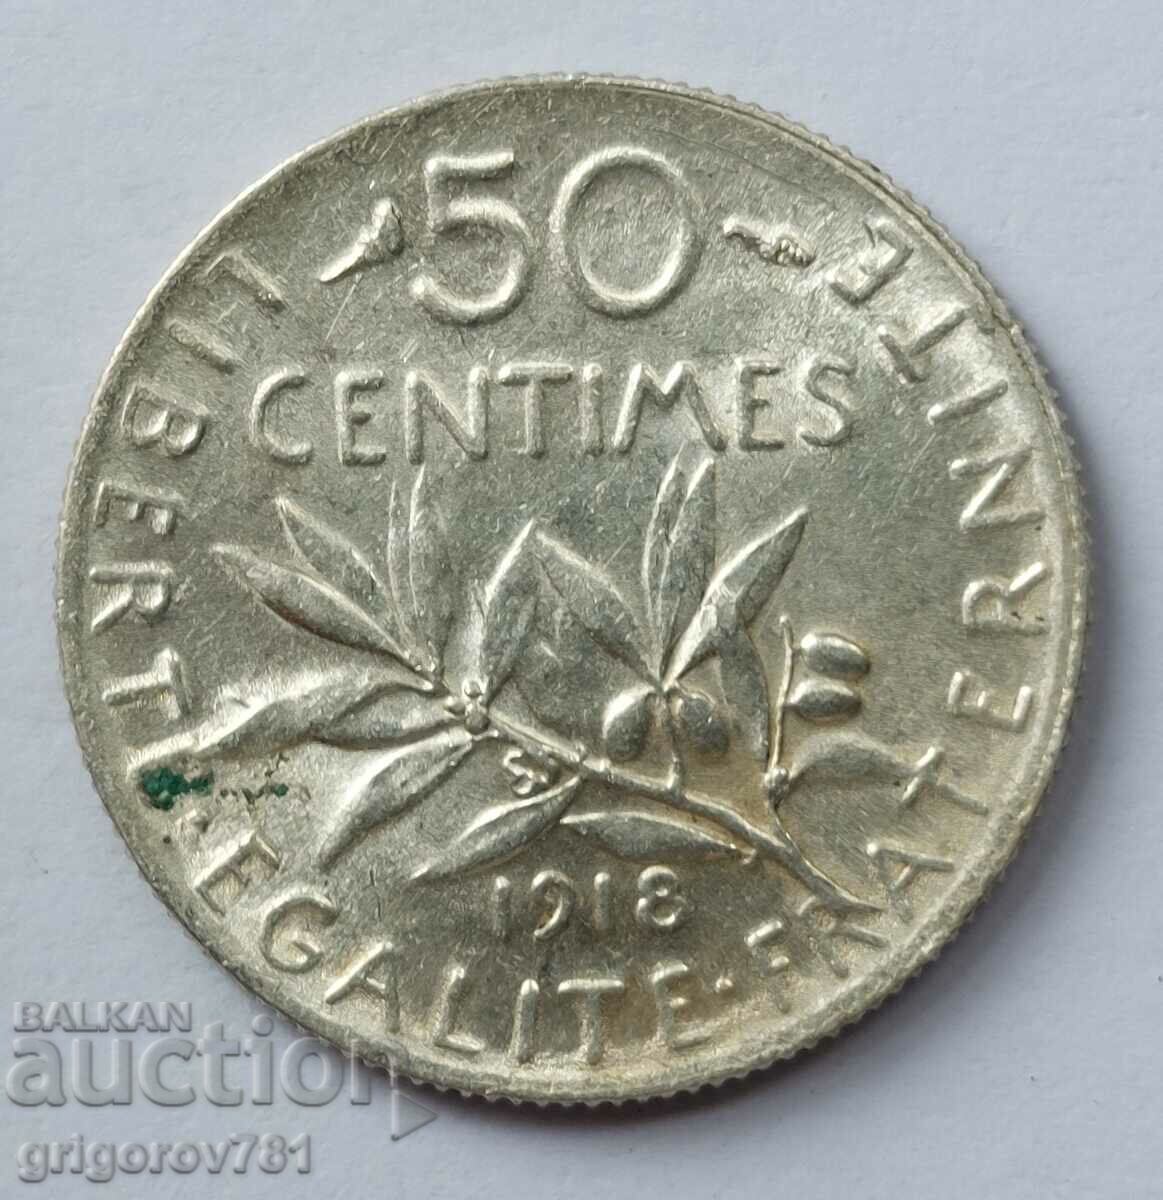 Ασημένιο 50 εκατοστά Γαλλία 1918 - ασημένιο νόμισμα №67